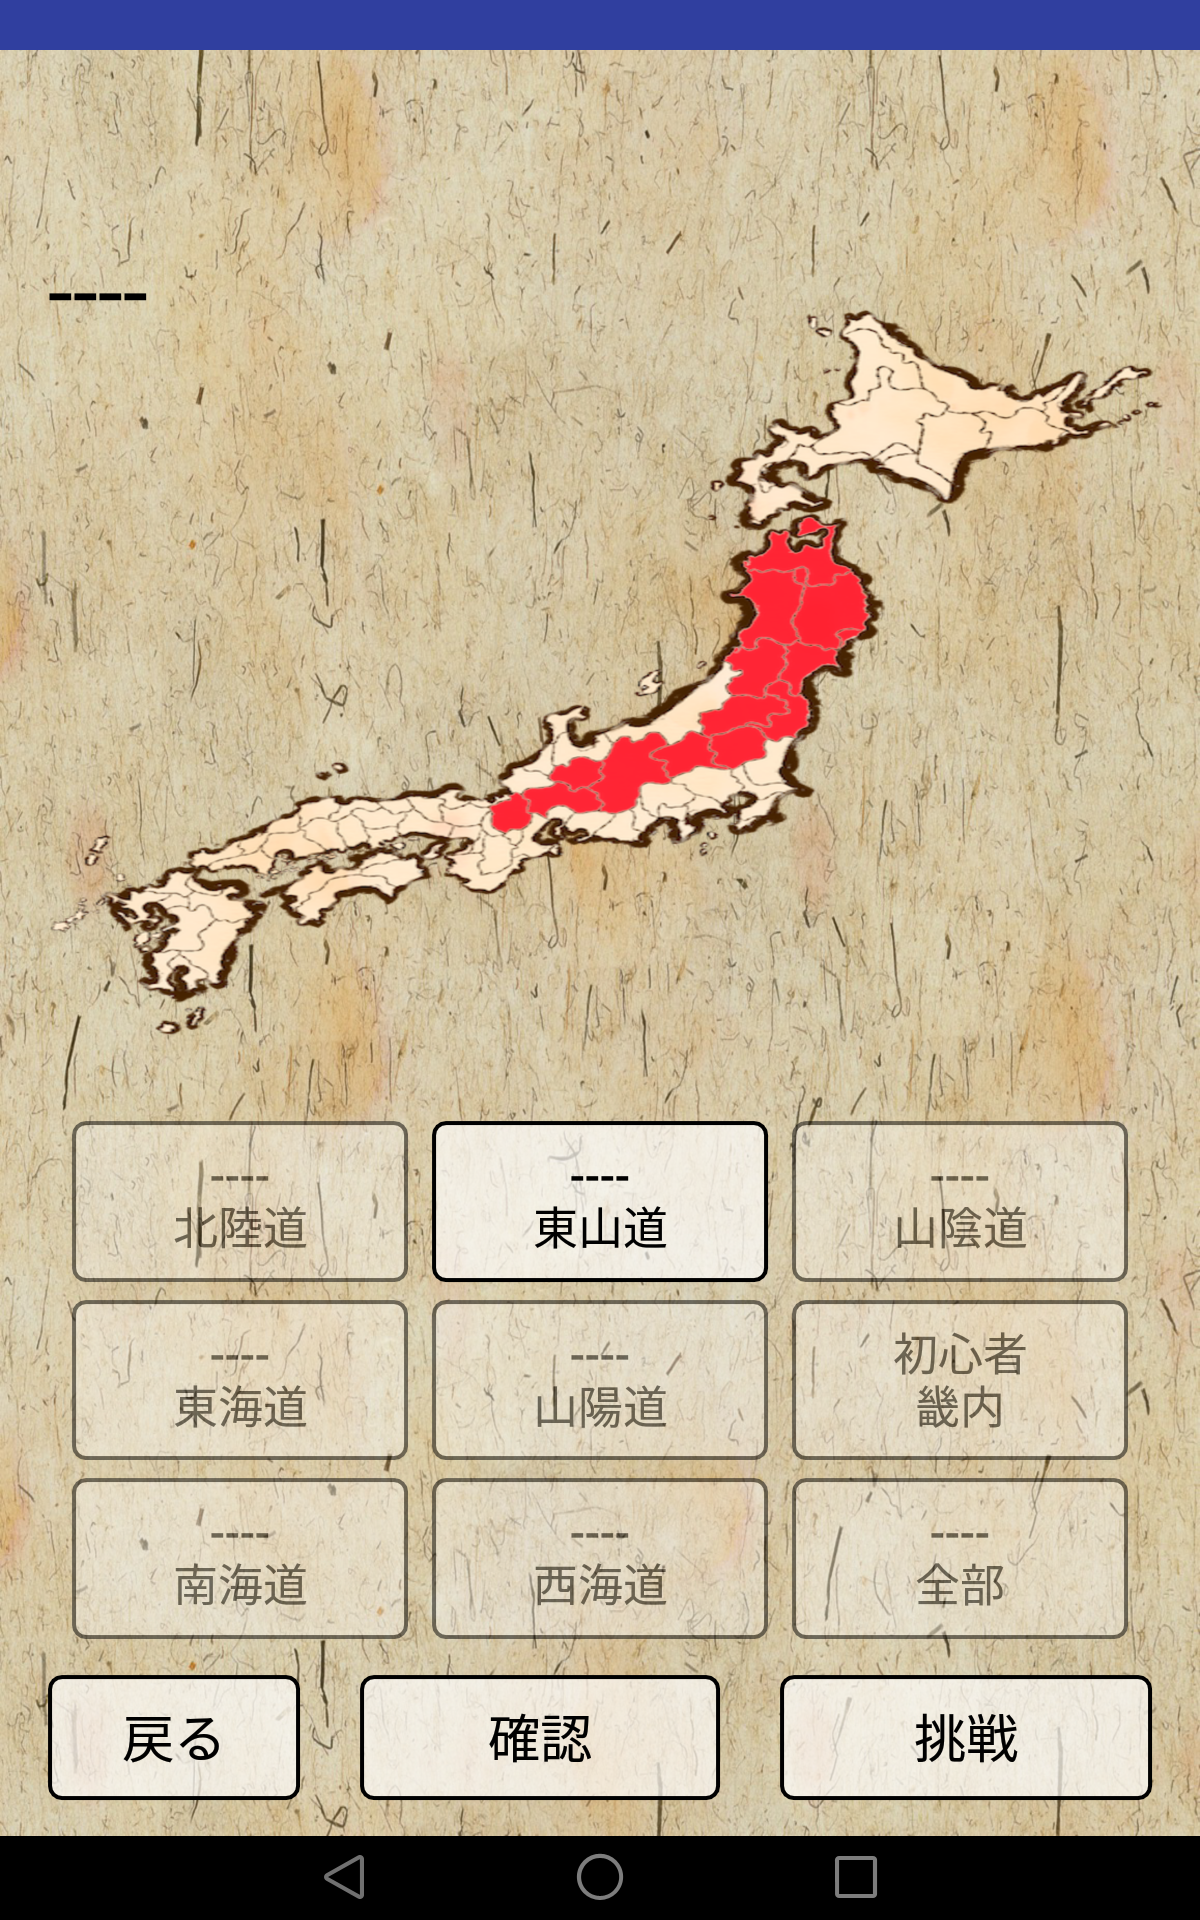 旧国名 昔の地名を覚えるクイズアプリ 昔の都道府県をおぼえよう Ki S Application